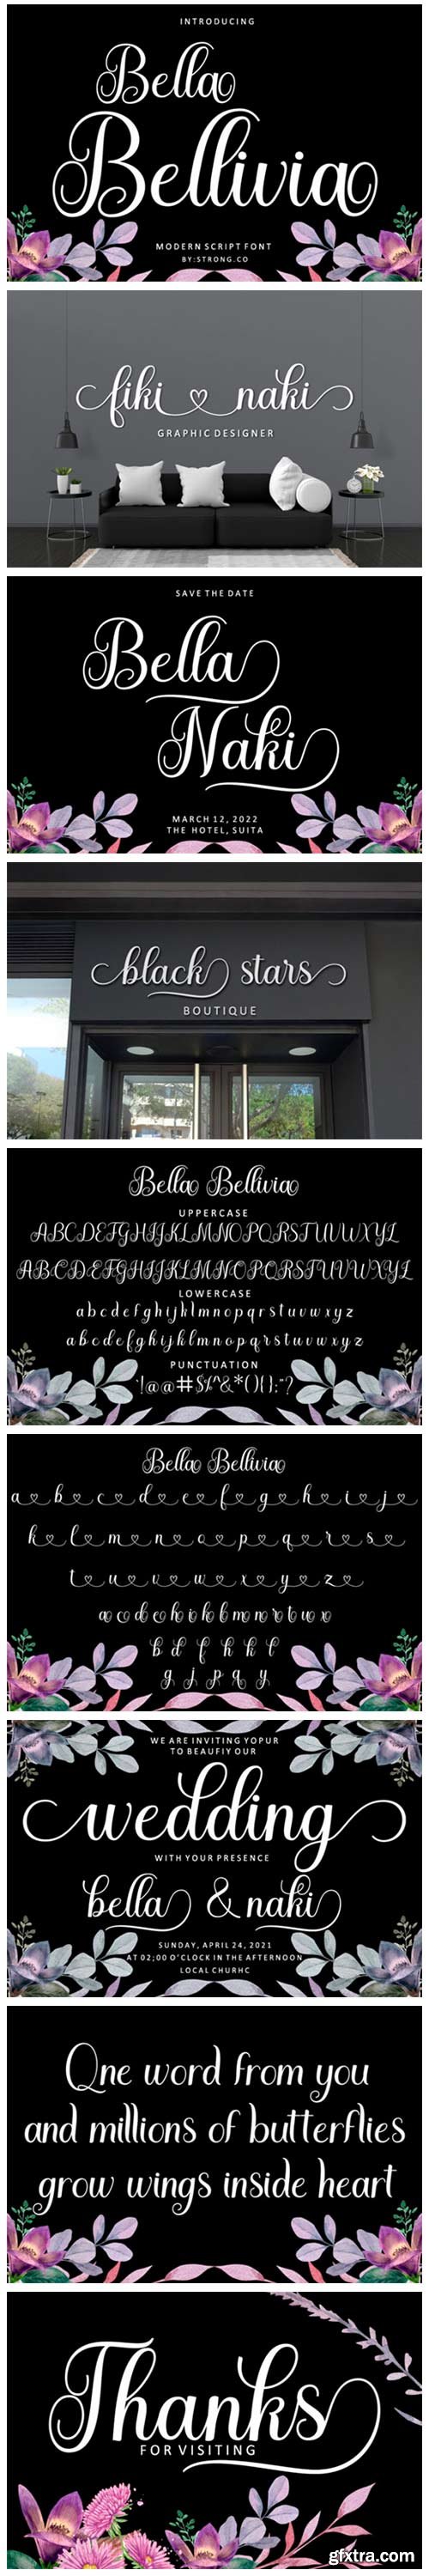 Bella Bellivia Font